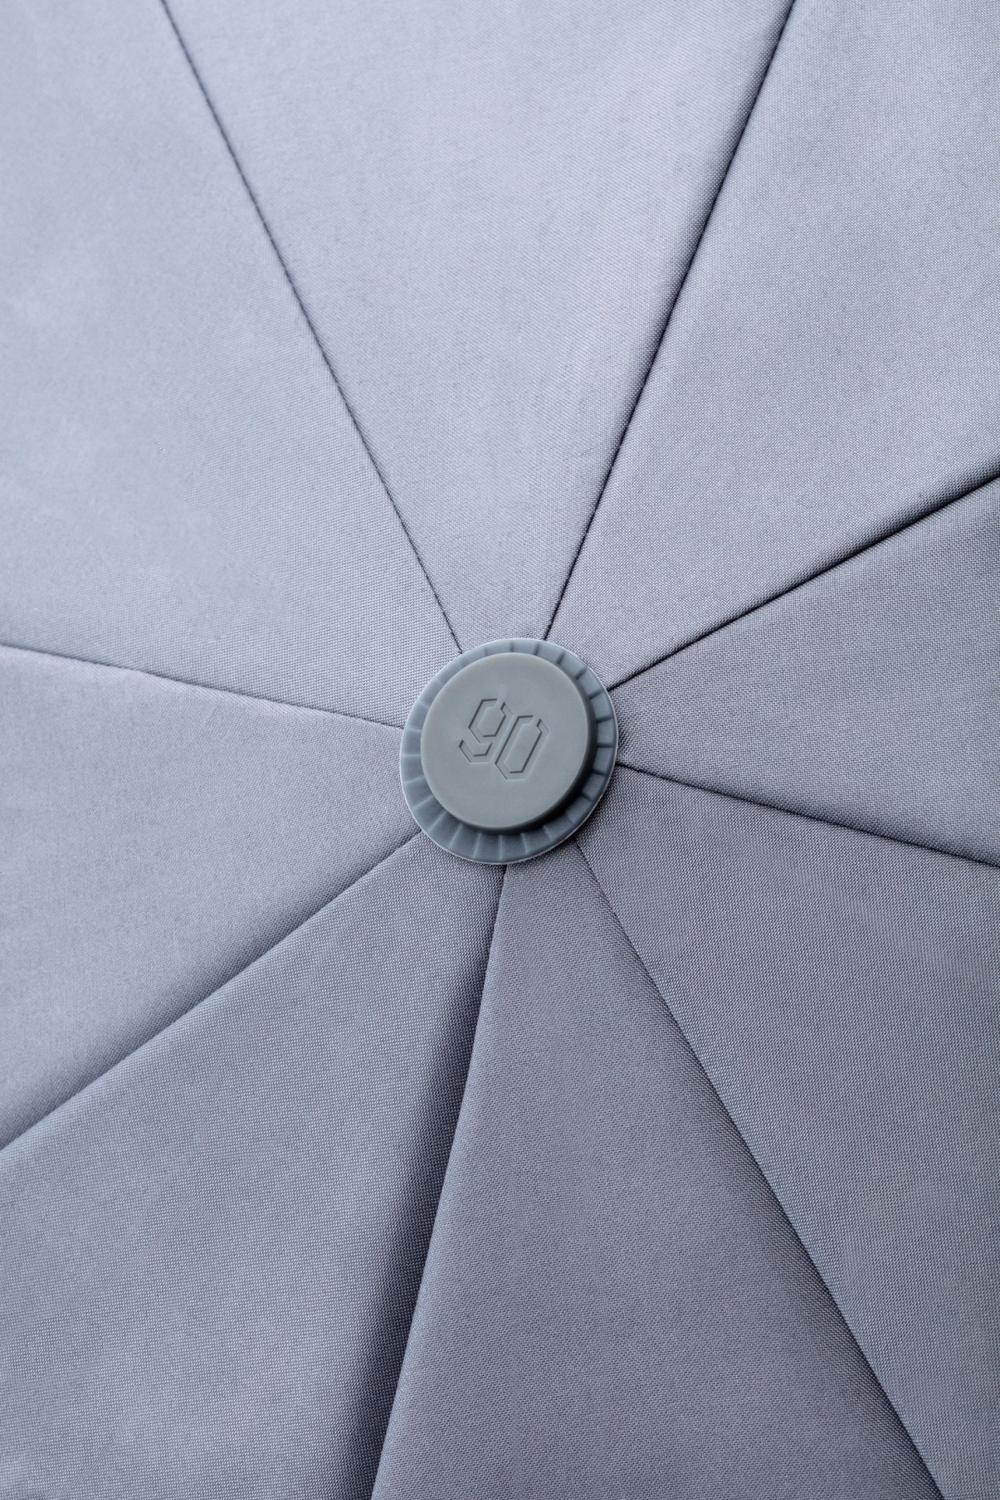 Складной зонт Xiaomi Ninetygo Oversized Portable Umbrella Automatic Version автомат серый